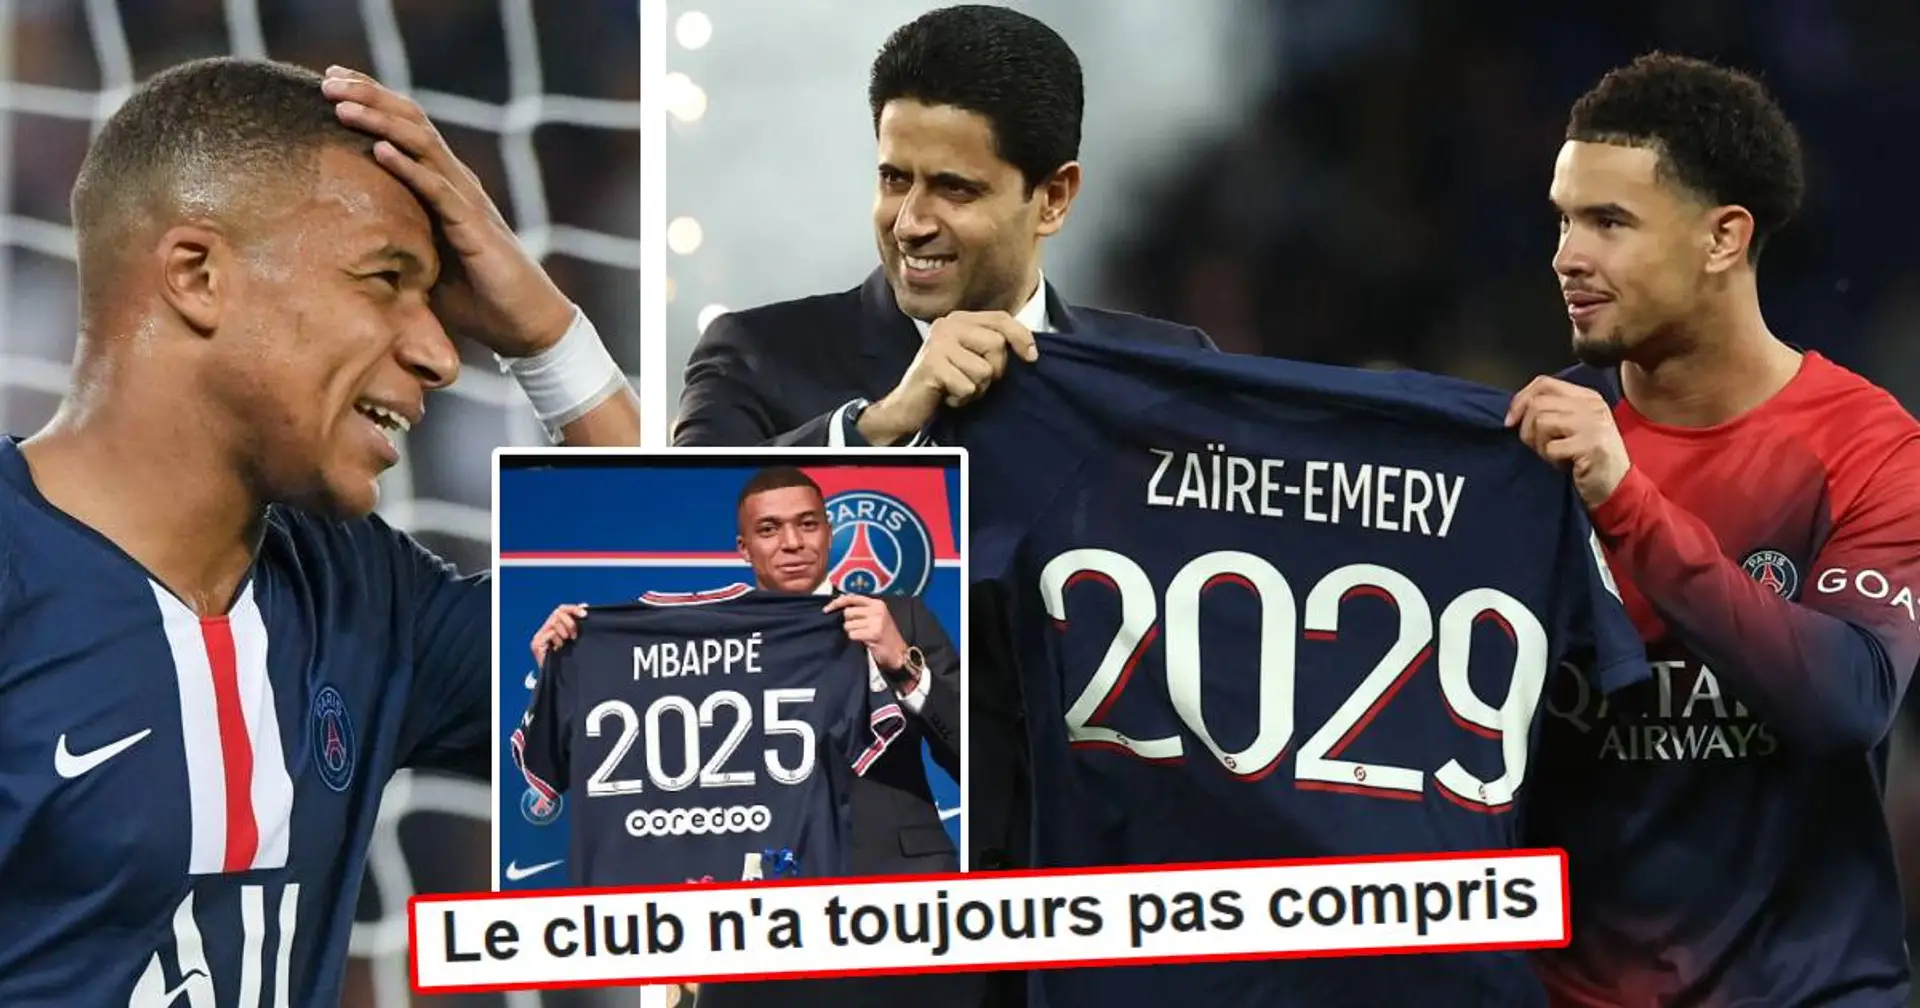 "Ils refont une Mbappé" : les fans réagissent à l'importante précision concernant la durée de prolongation de Zaïre-Emery au PSG